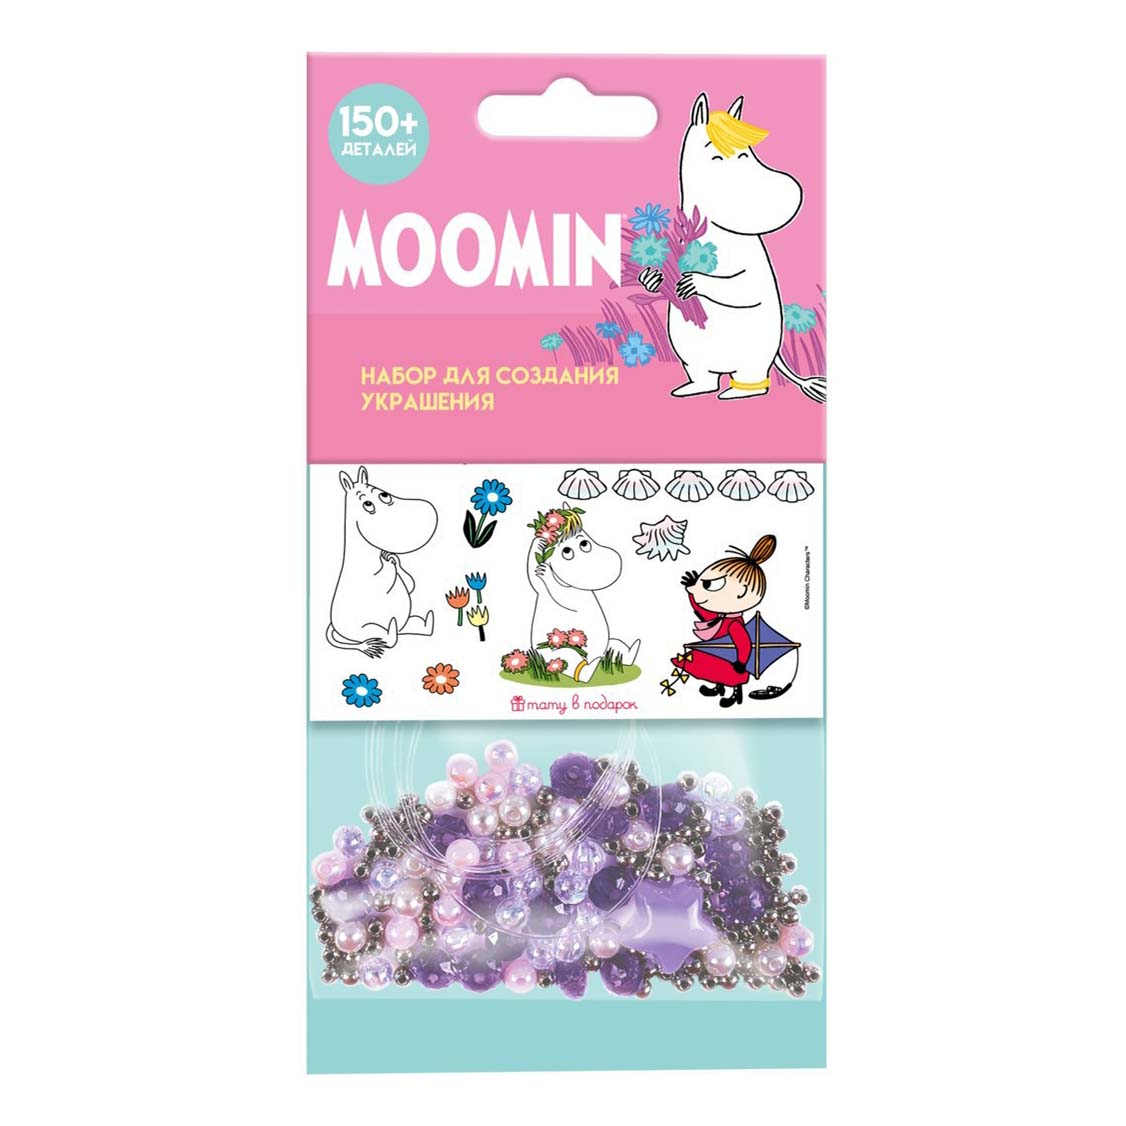 Набор для создания украшений Moomin, 150 дет.